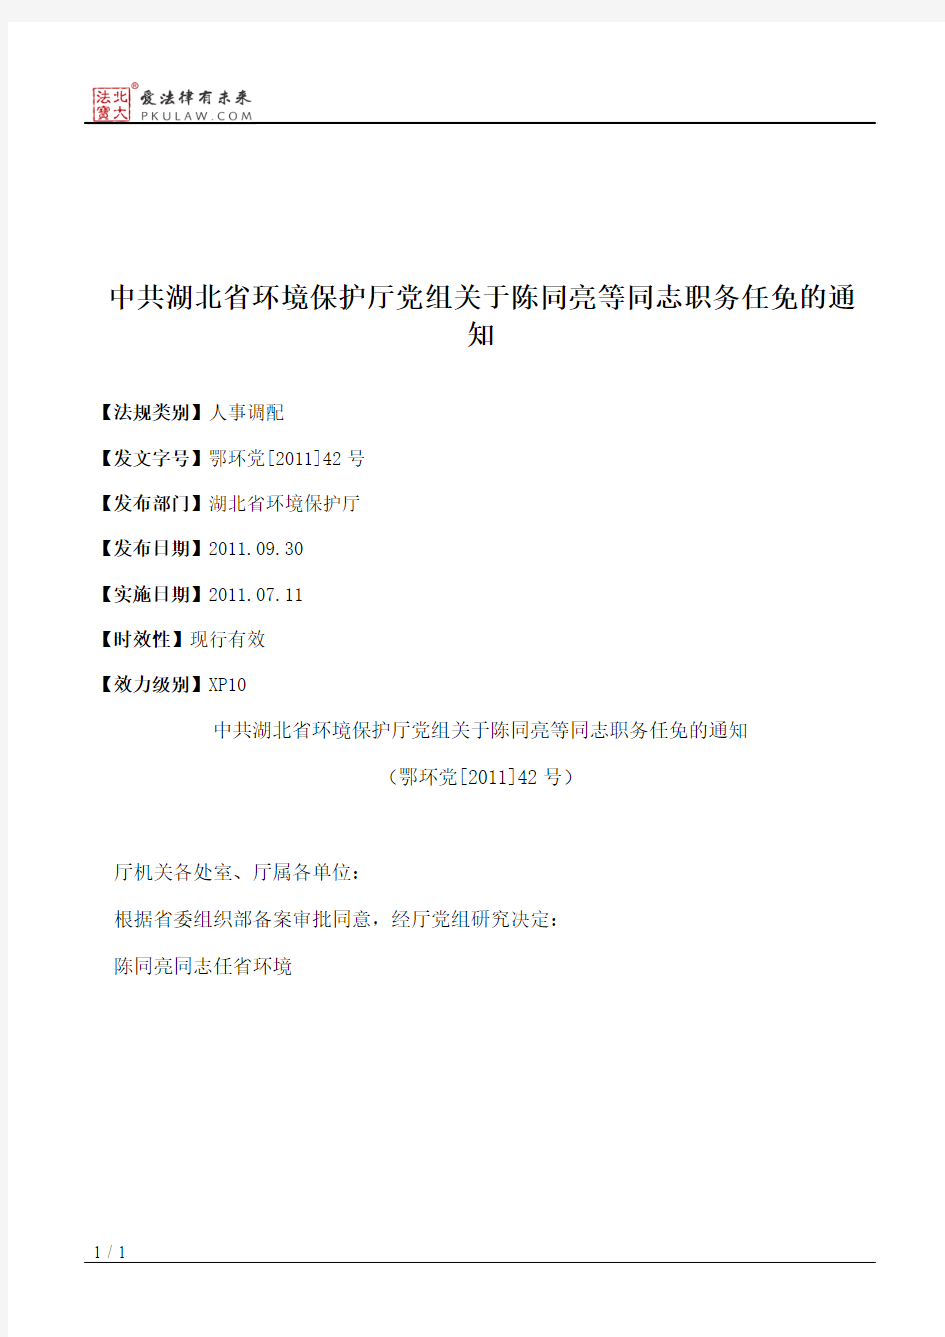 中共湖北省环境保护厅党组关于陈同亮等同志职务任免的通知